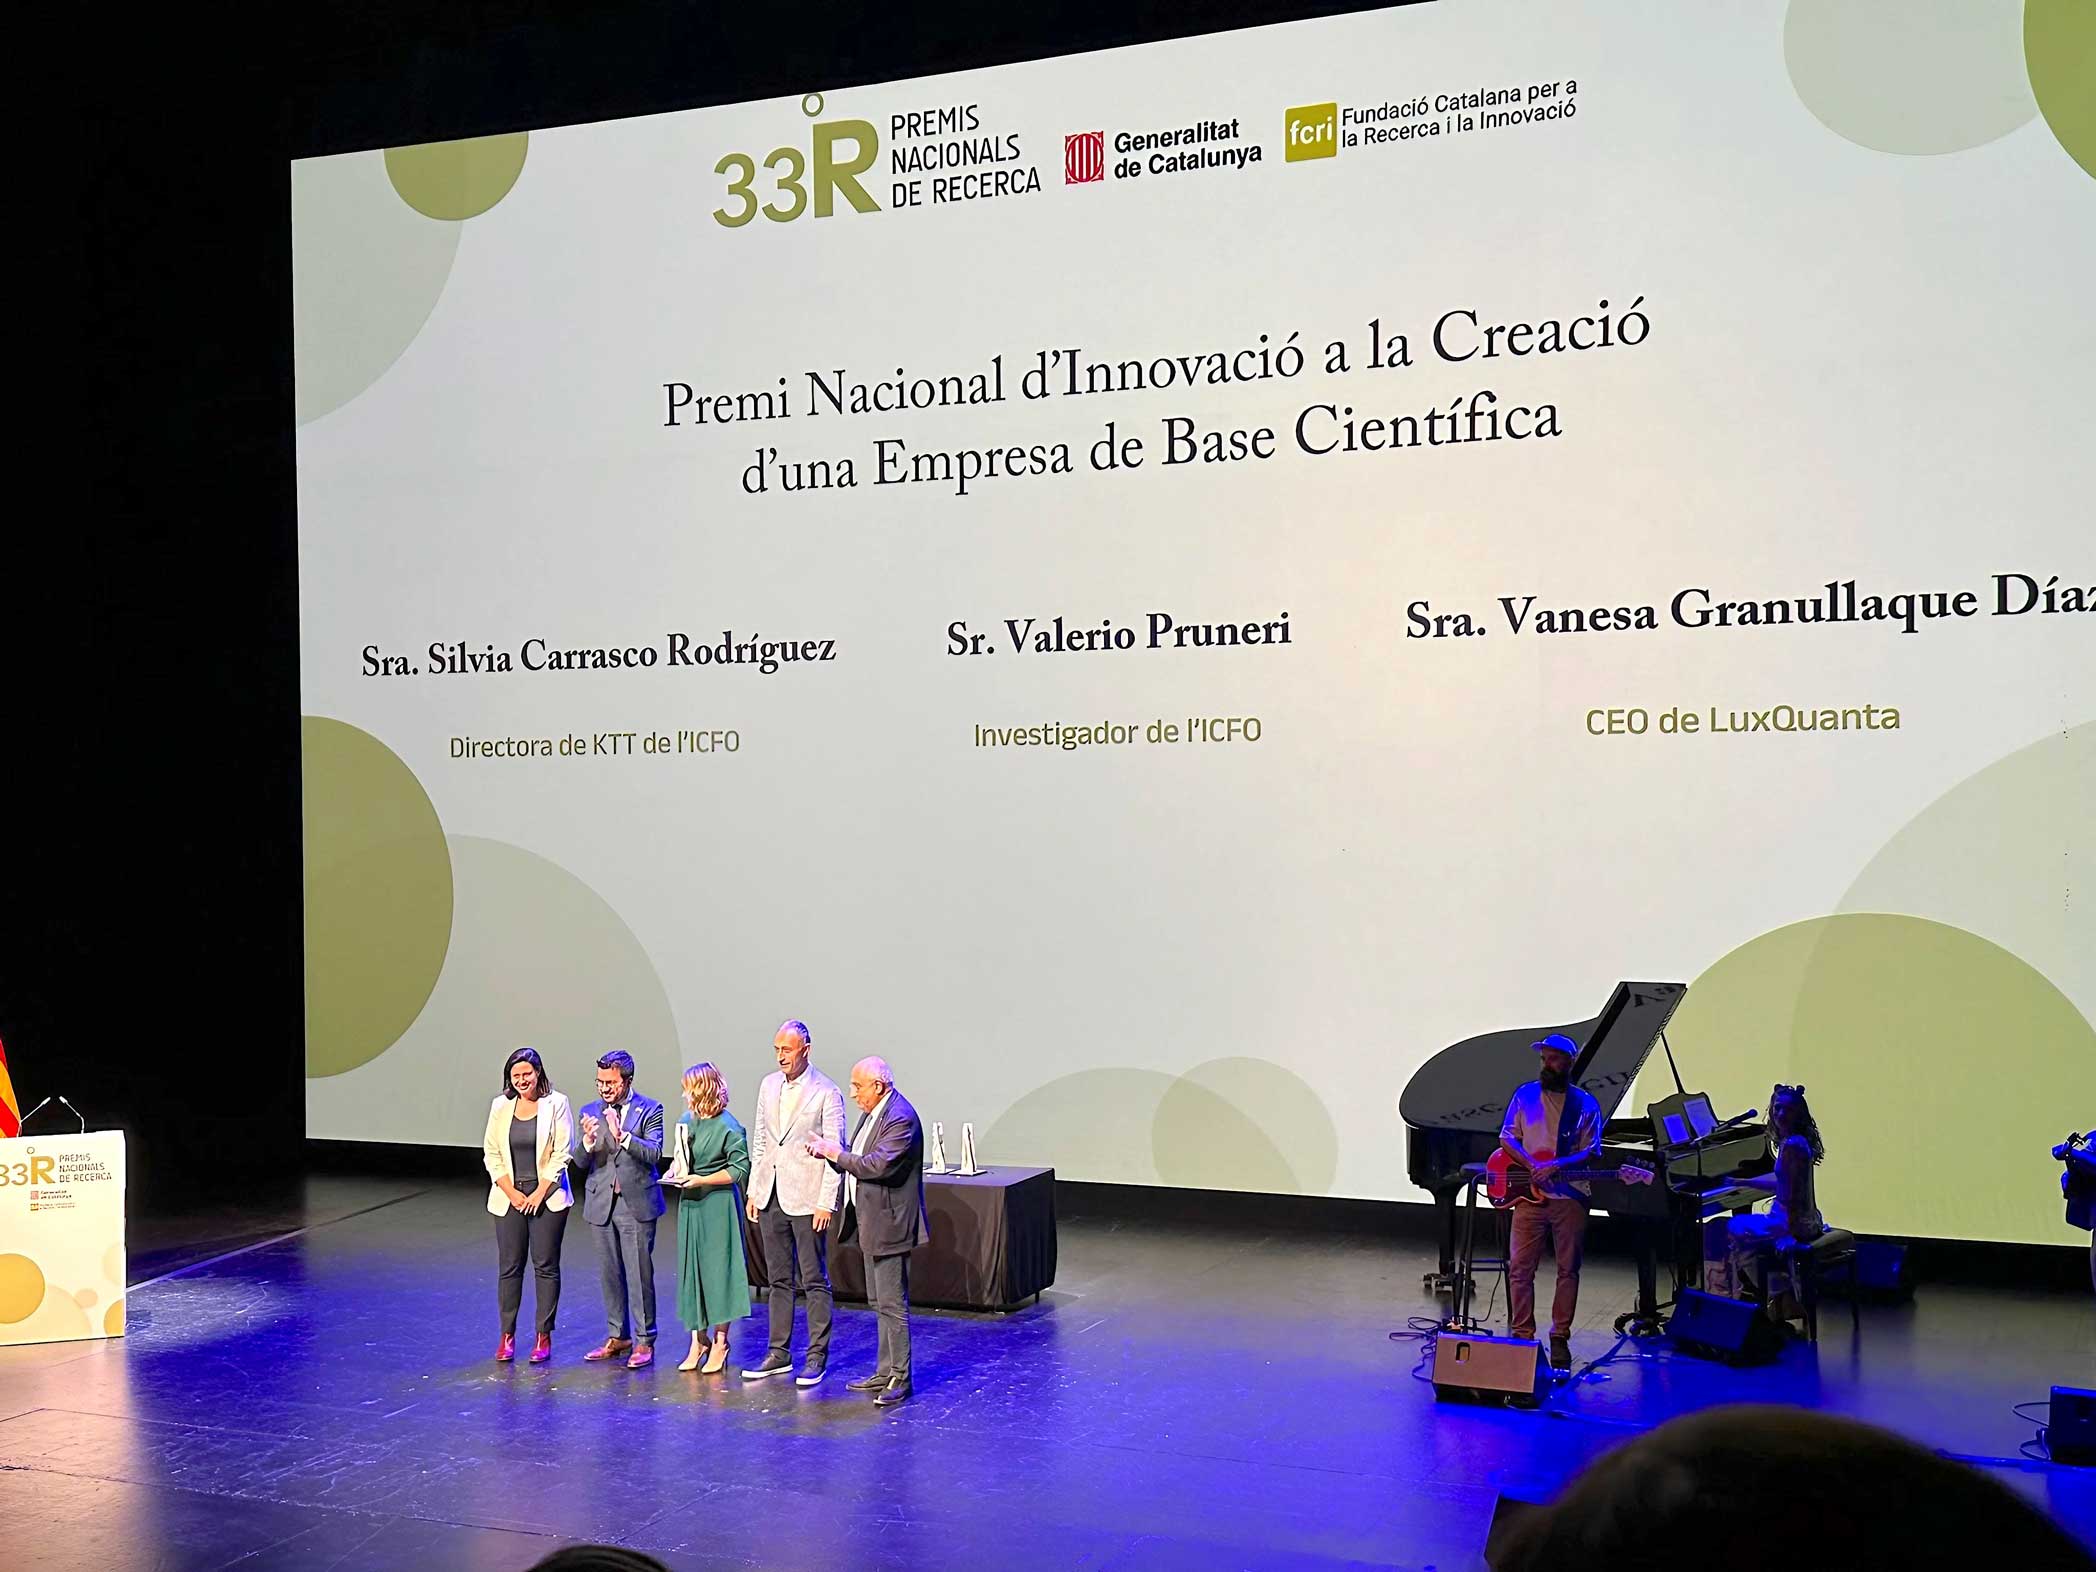 La directora de KTT Silvia Carrasco, Valeri Pruneri com a investigador de l’ICFO i Vanessa Granullaque com a CEO de LuxQuanta, tots tres van rebre el Premi Nacional de Recerca en la categoria de Premi Nacional d’Innovació a la Creació d’una Empresa de Base Científica.